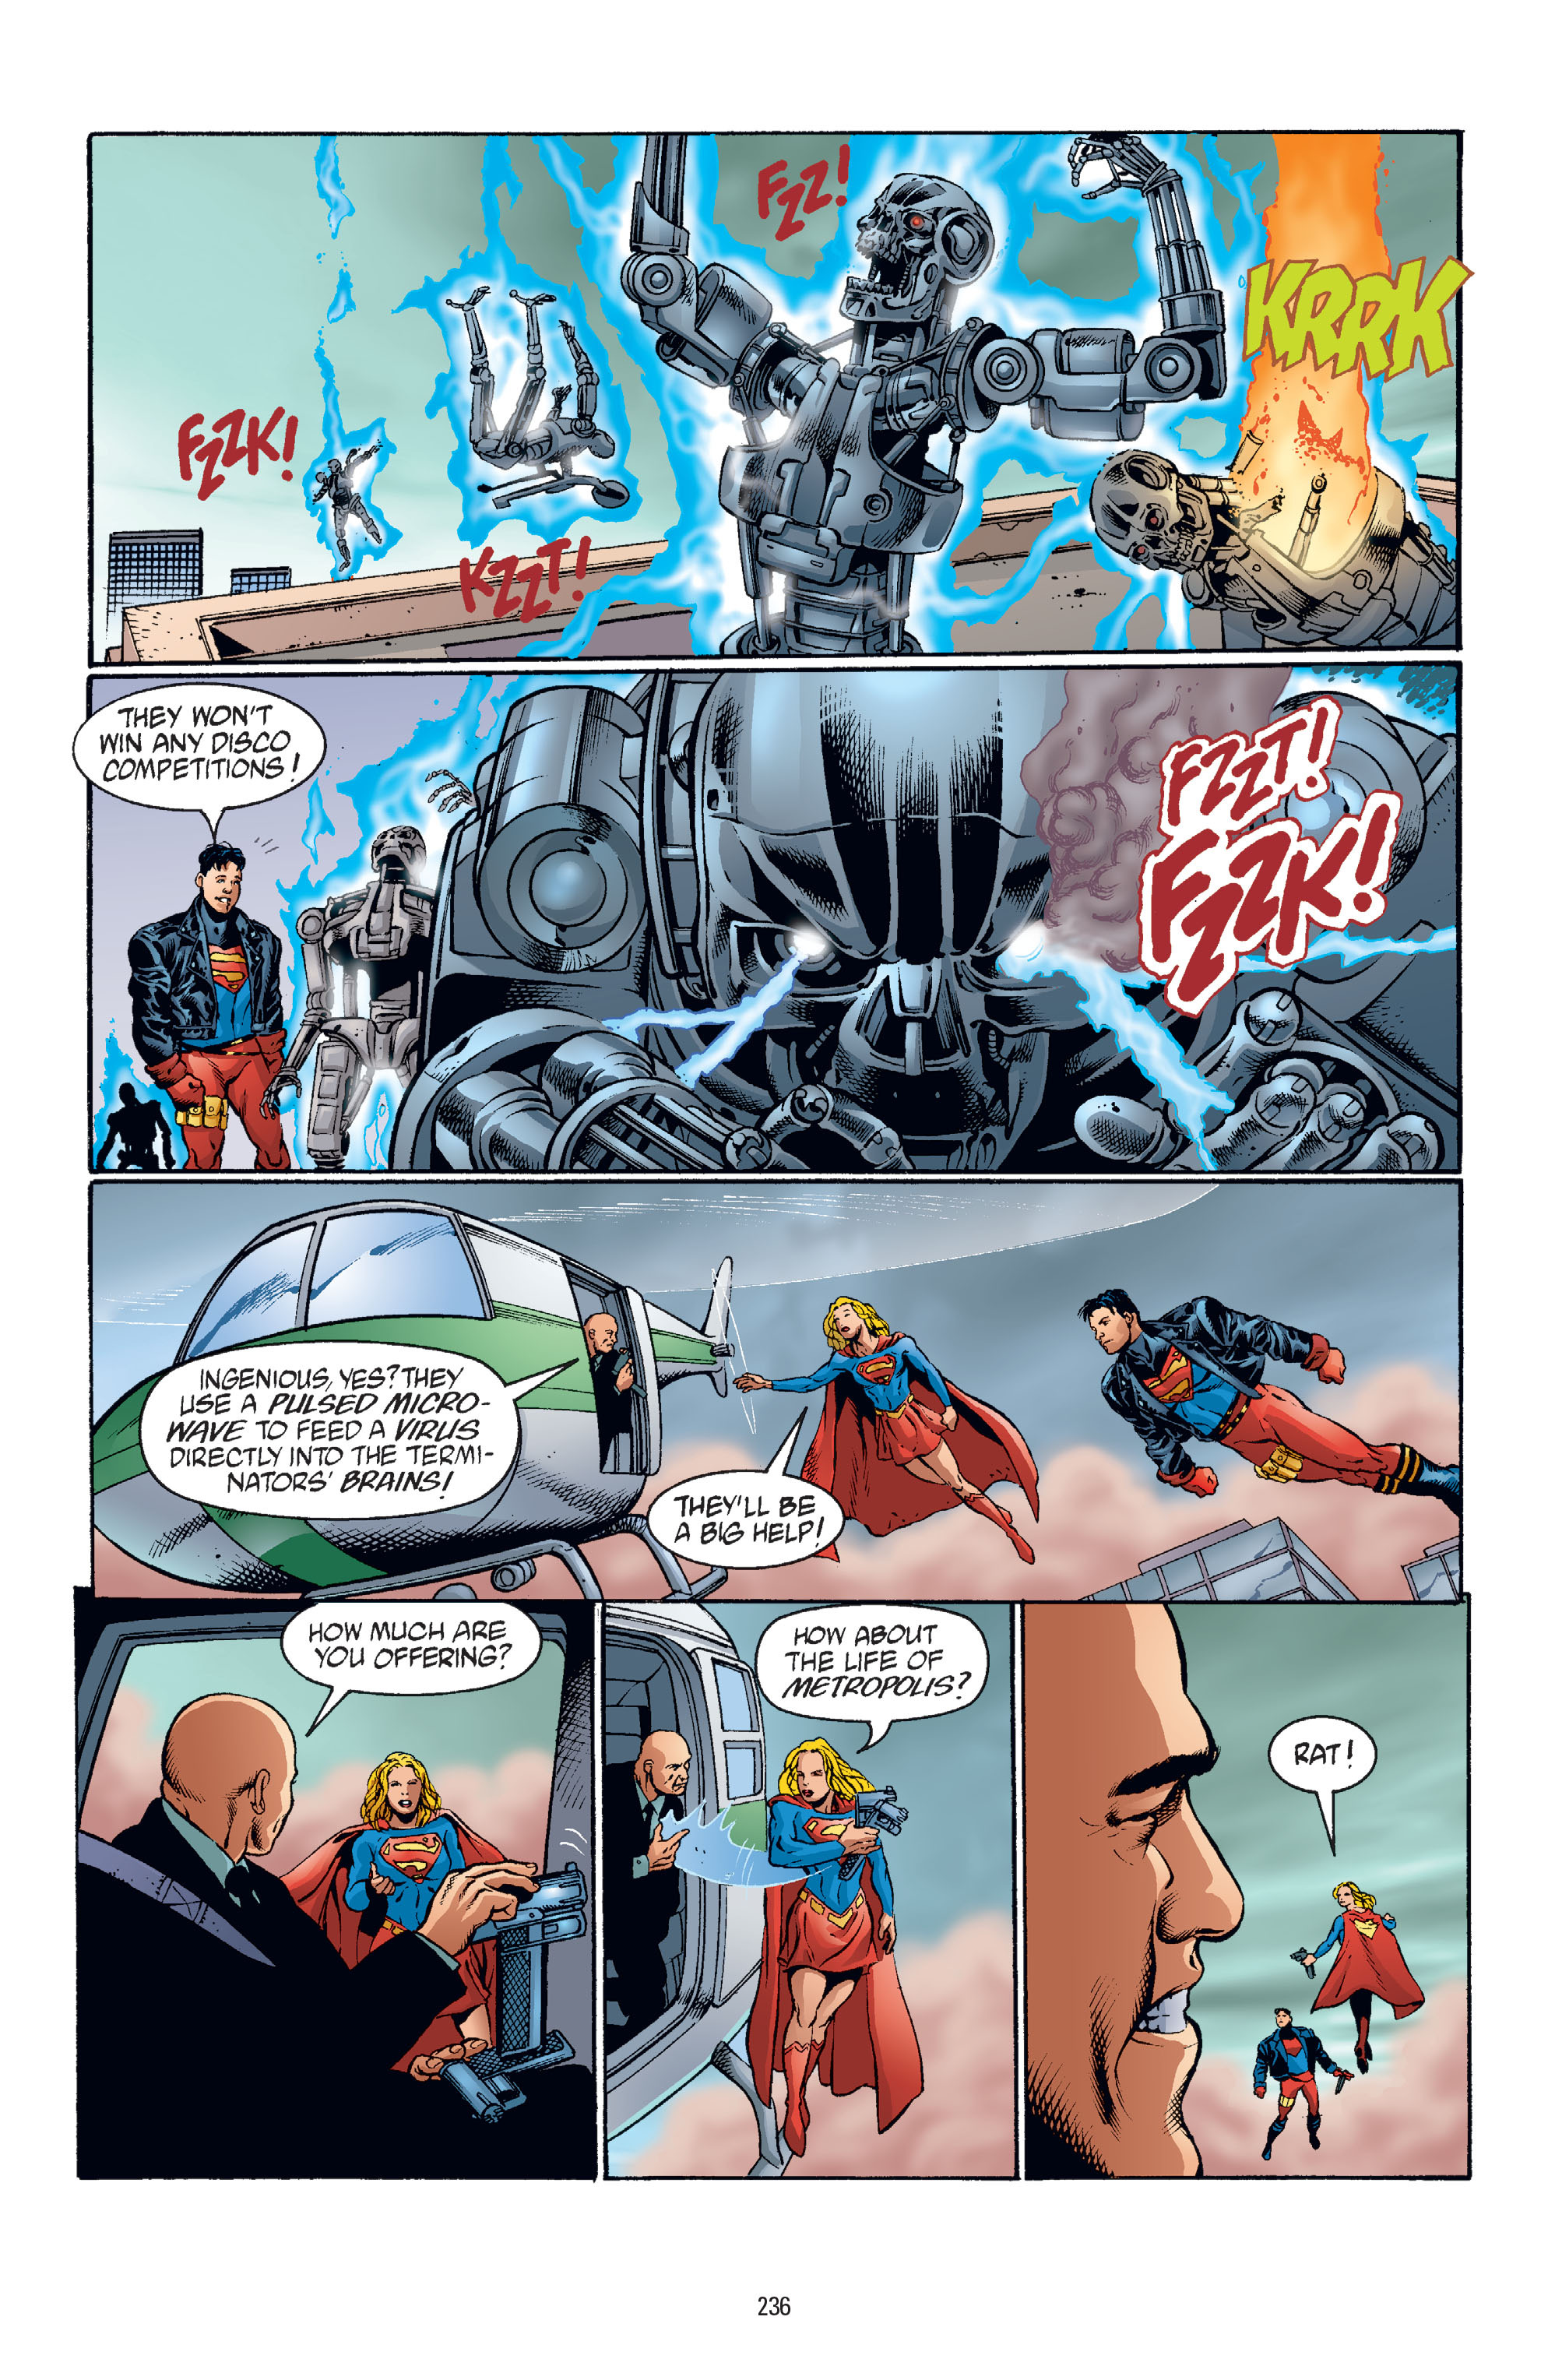 DC Comics/Dark Horse Comics: Justice League Full #1 - English 228